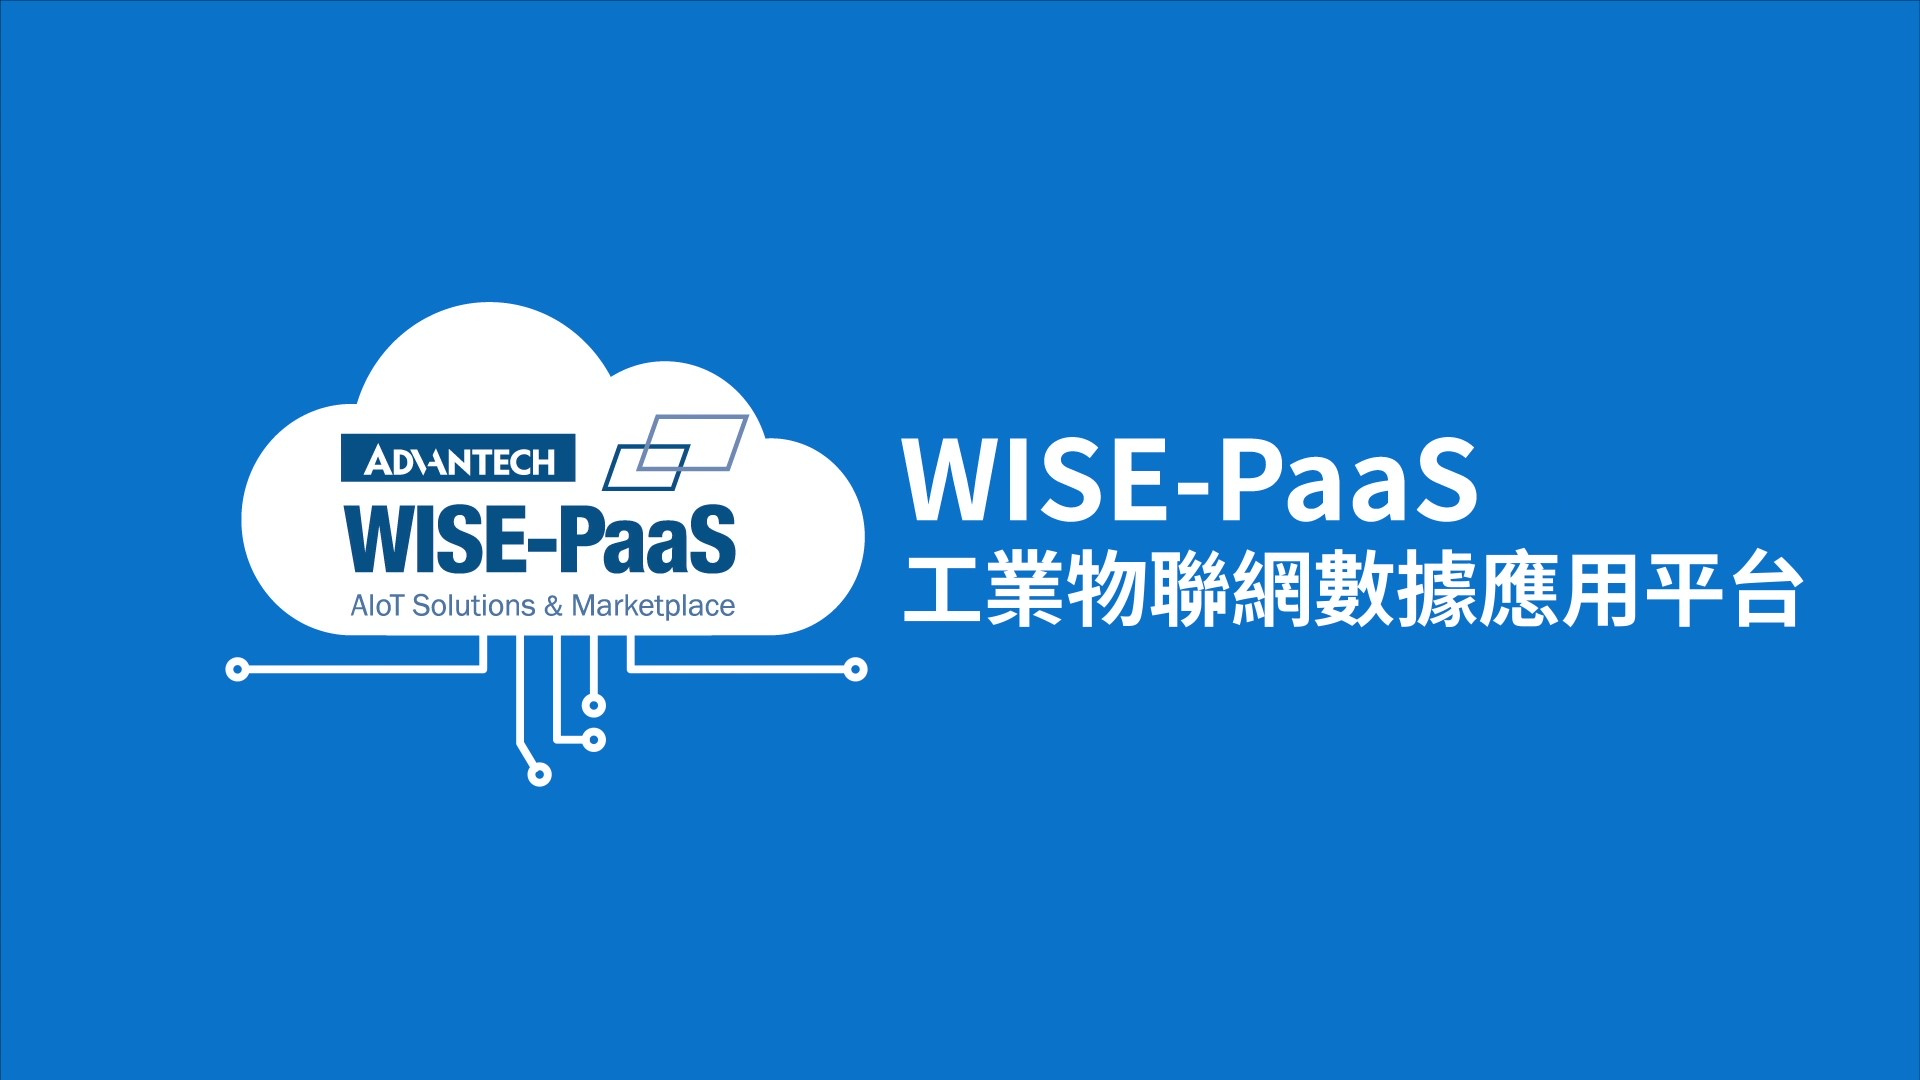 以WISE-PaaS輕鬆實踐工業物聯網多元應用構建